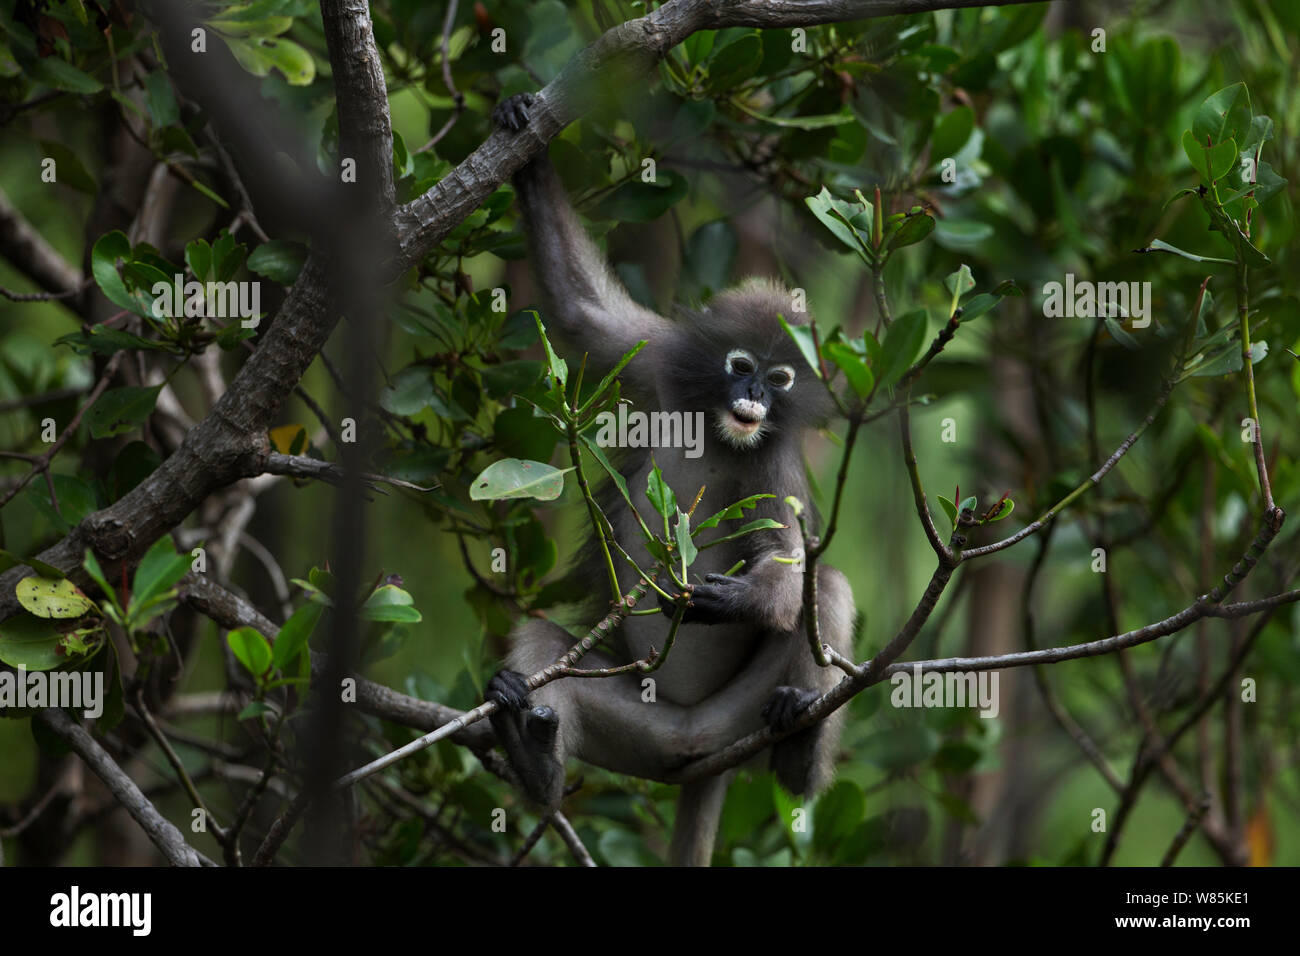 Singe feuille sombre (Trachypithecus obscurus) femelle se nourrissant des feuilles . Khao Sam Roi Yot National Park, Thaïlande. Banque D'Images